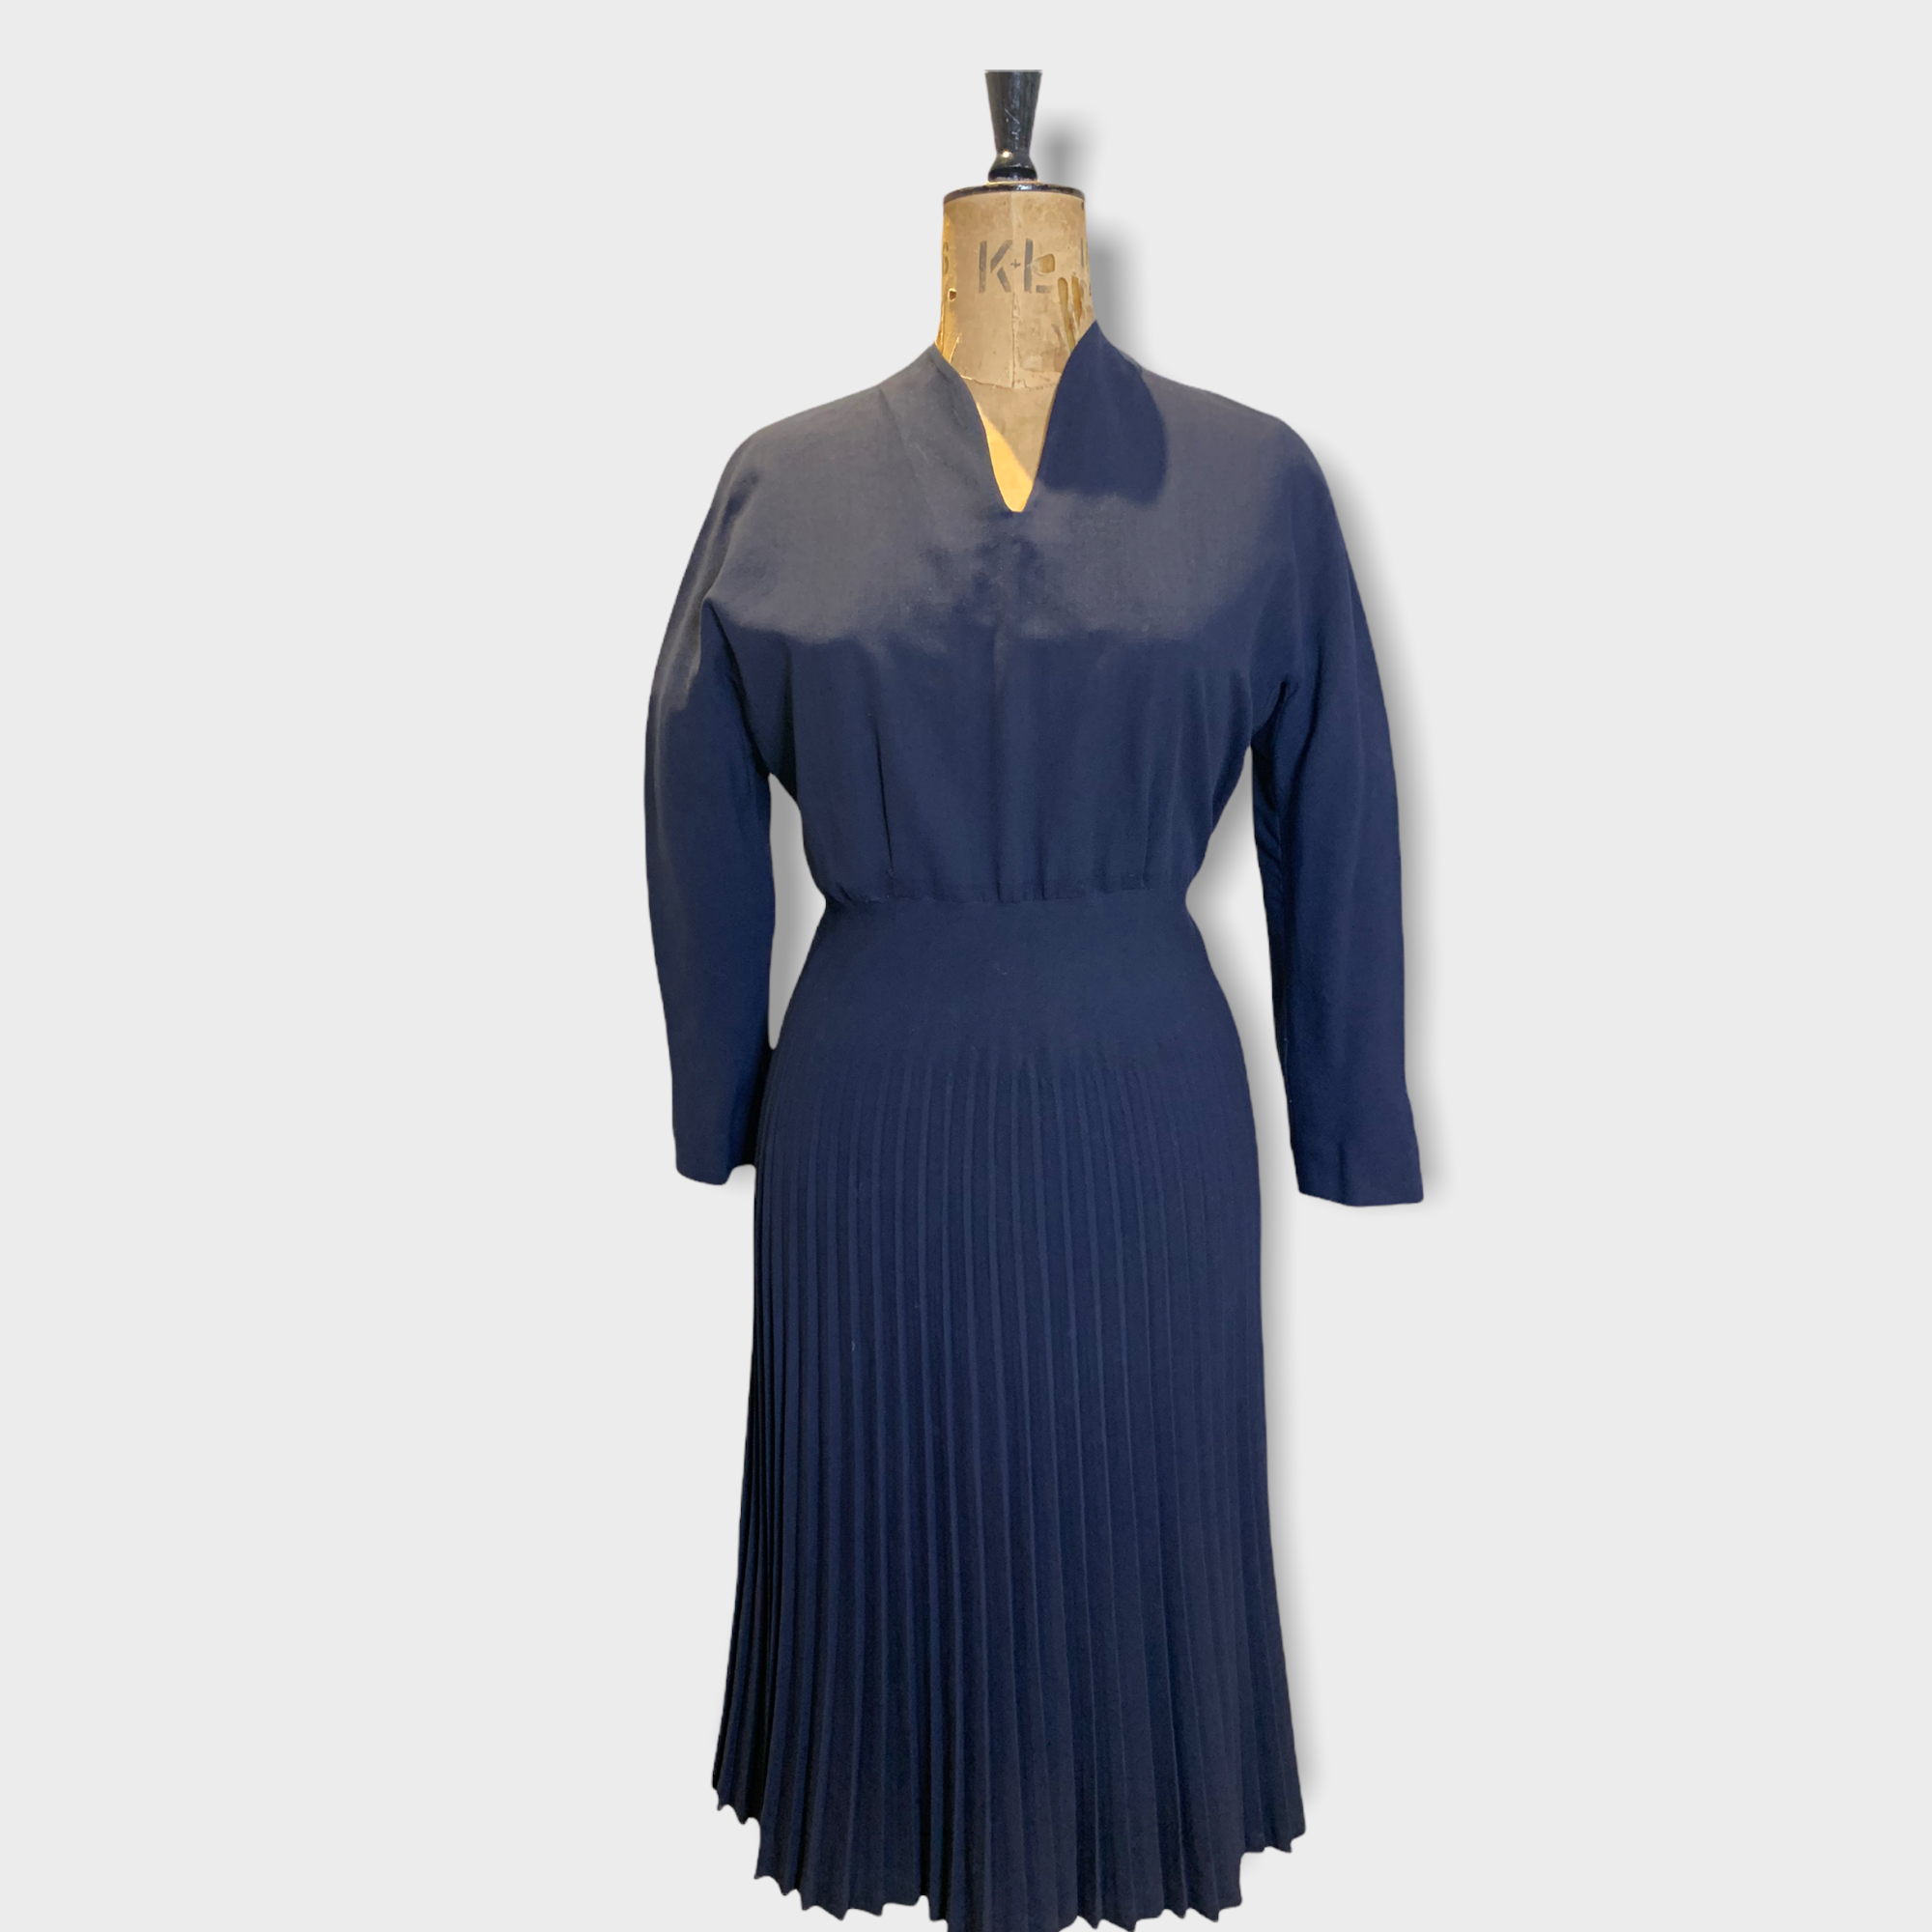 40s Vintage Italian Wool Dress UK Size 14 - 16 